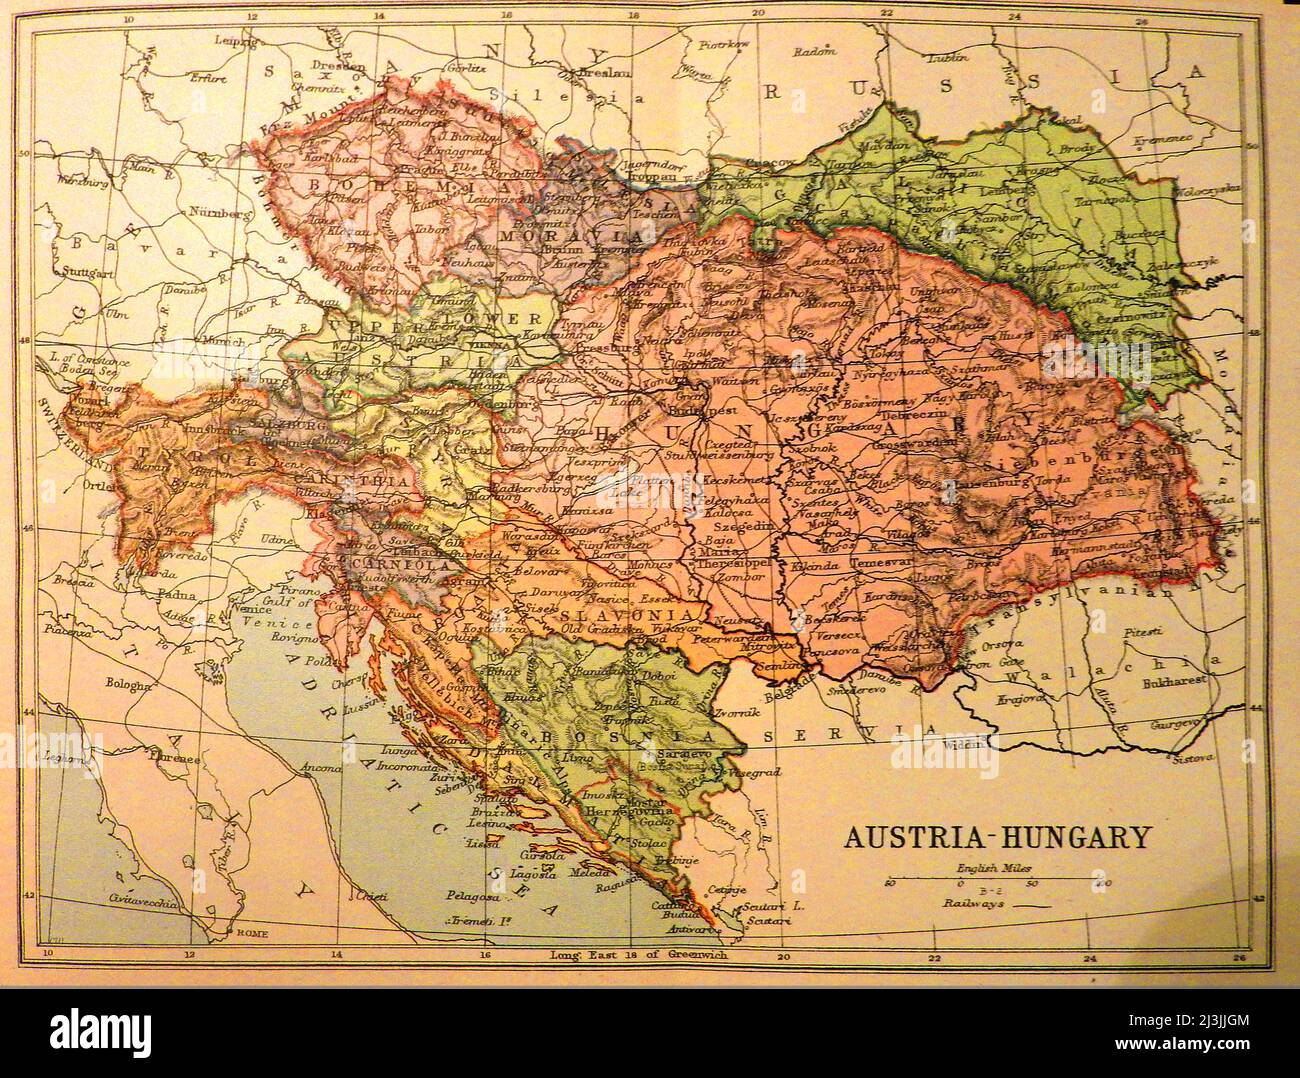 Eine kolorierte Landkarte von Österreich - Ungarn aus dem späten 19.. Jahrhundert mit Eisenbahnen, Grenzen und Entfernungen in englischen Meilen --- eine kolorierte Karte von Österreich - Ungarn aus dem späten 19. Jahrhundert ---- Ausztria - Magyarország 19. Század végi színes térképe. Stockfoto